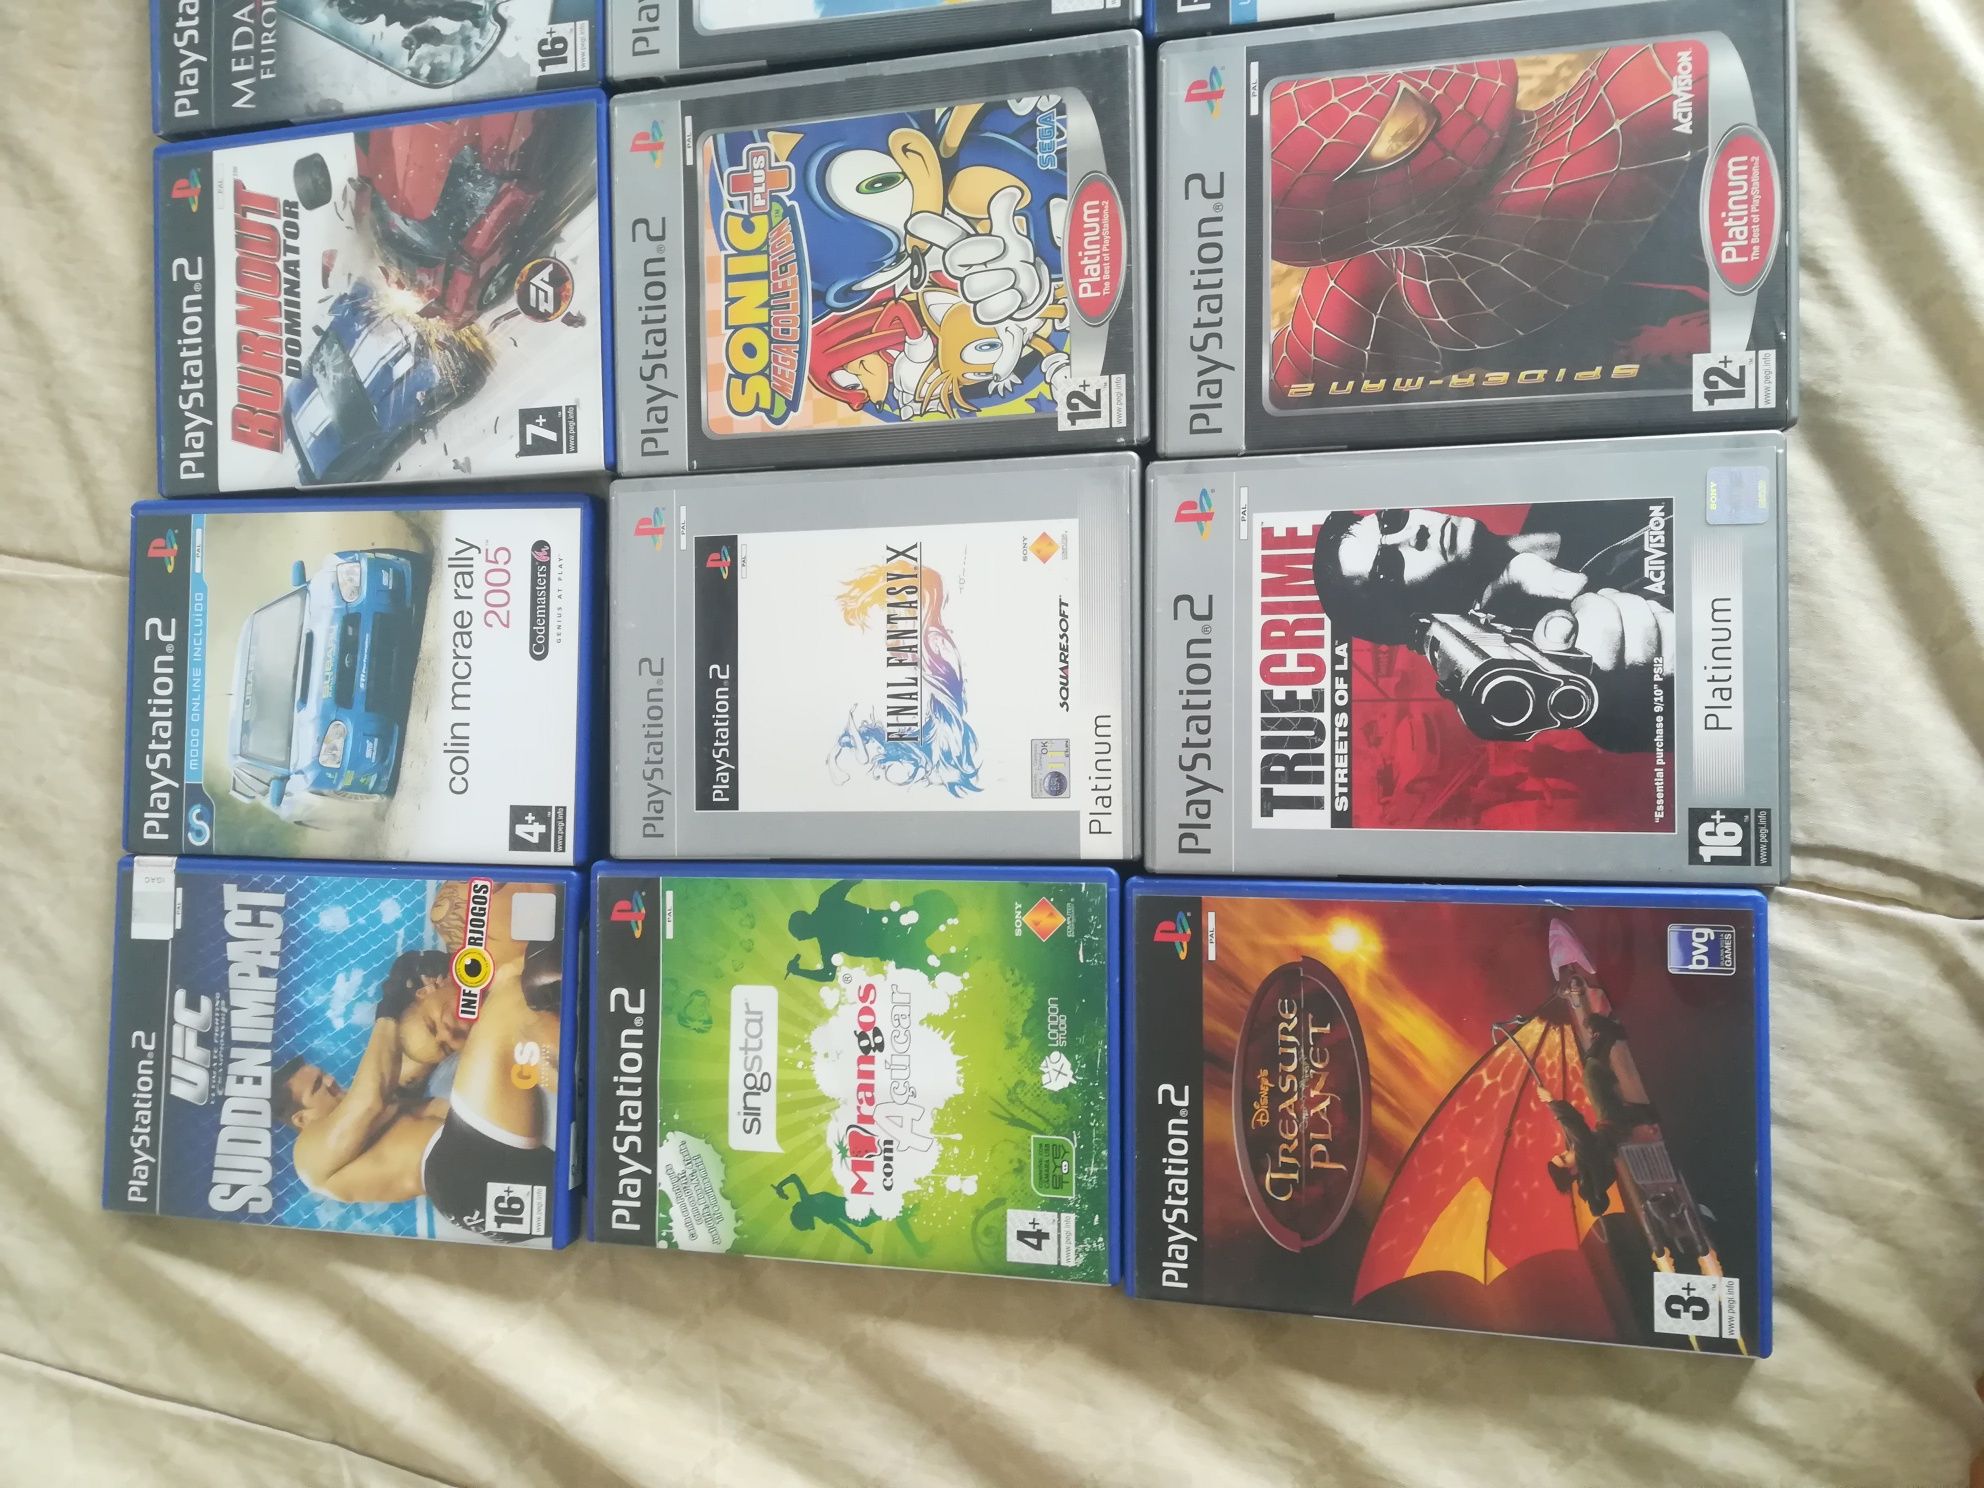 Vendo lote de jogos PS2 (sonic, Tom clancy, spider man, final fantasy)